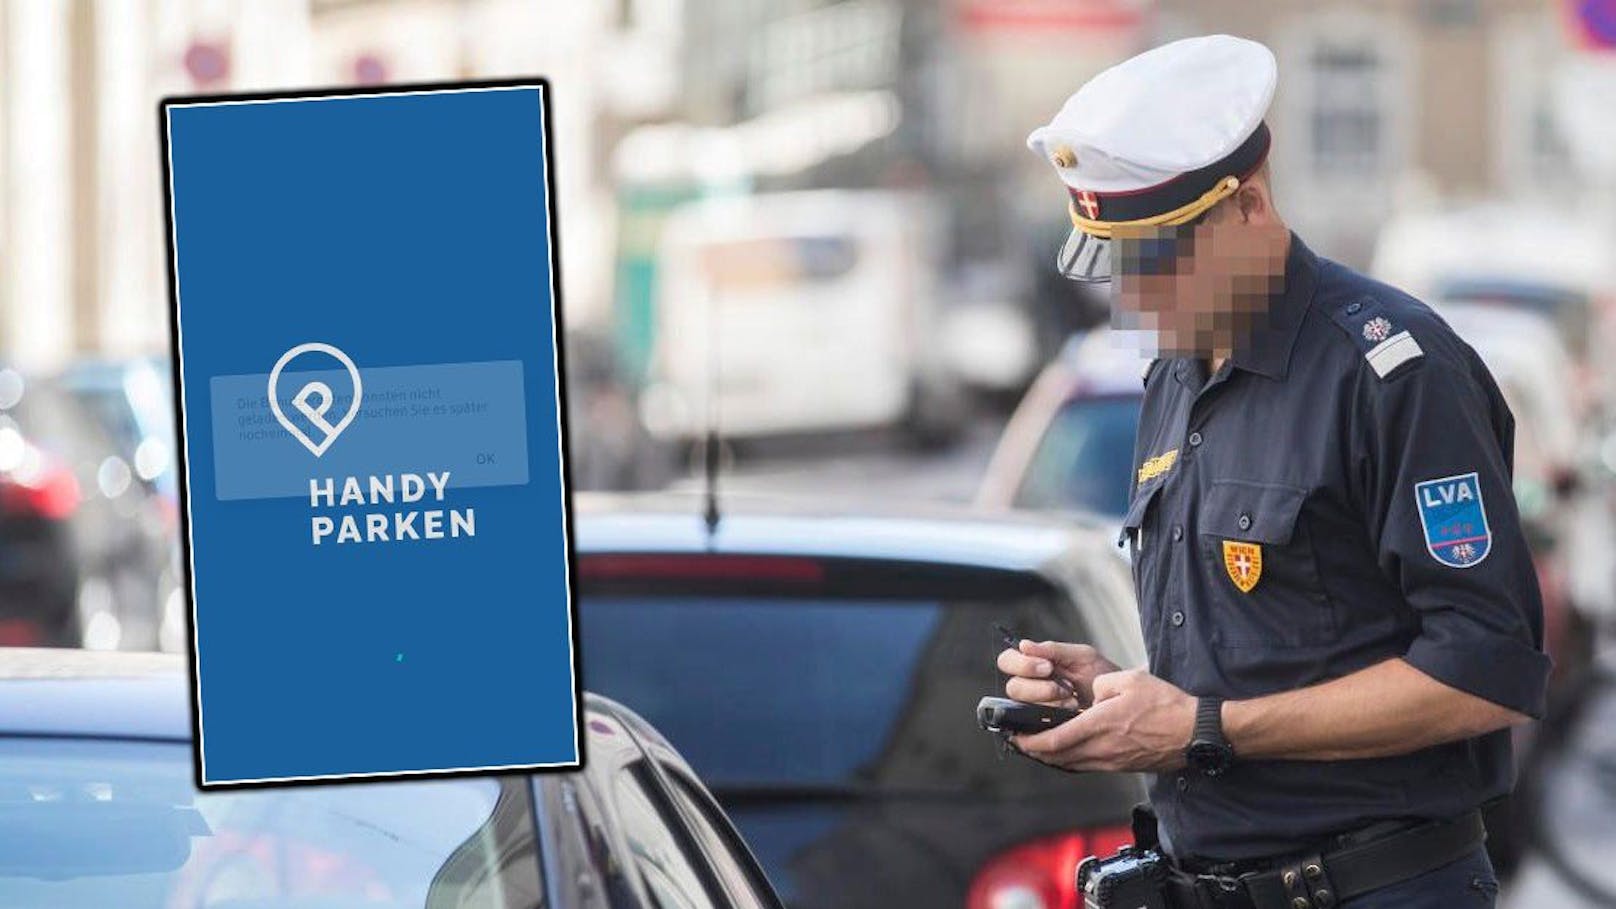 Parkschein-App streikt – Wiener muss nach Trafik suchen